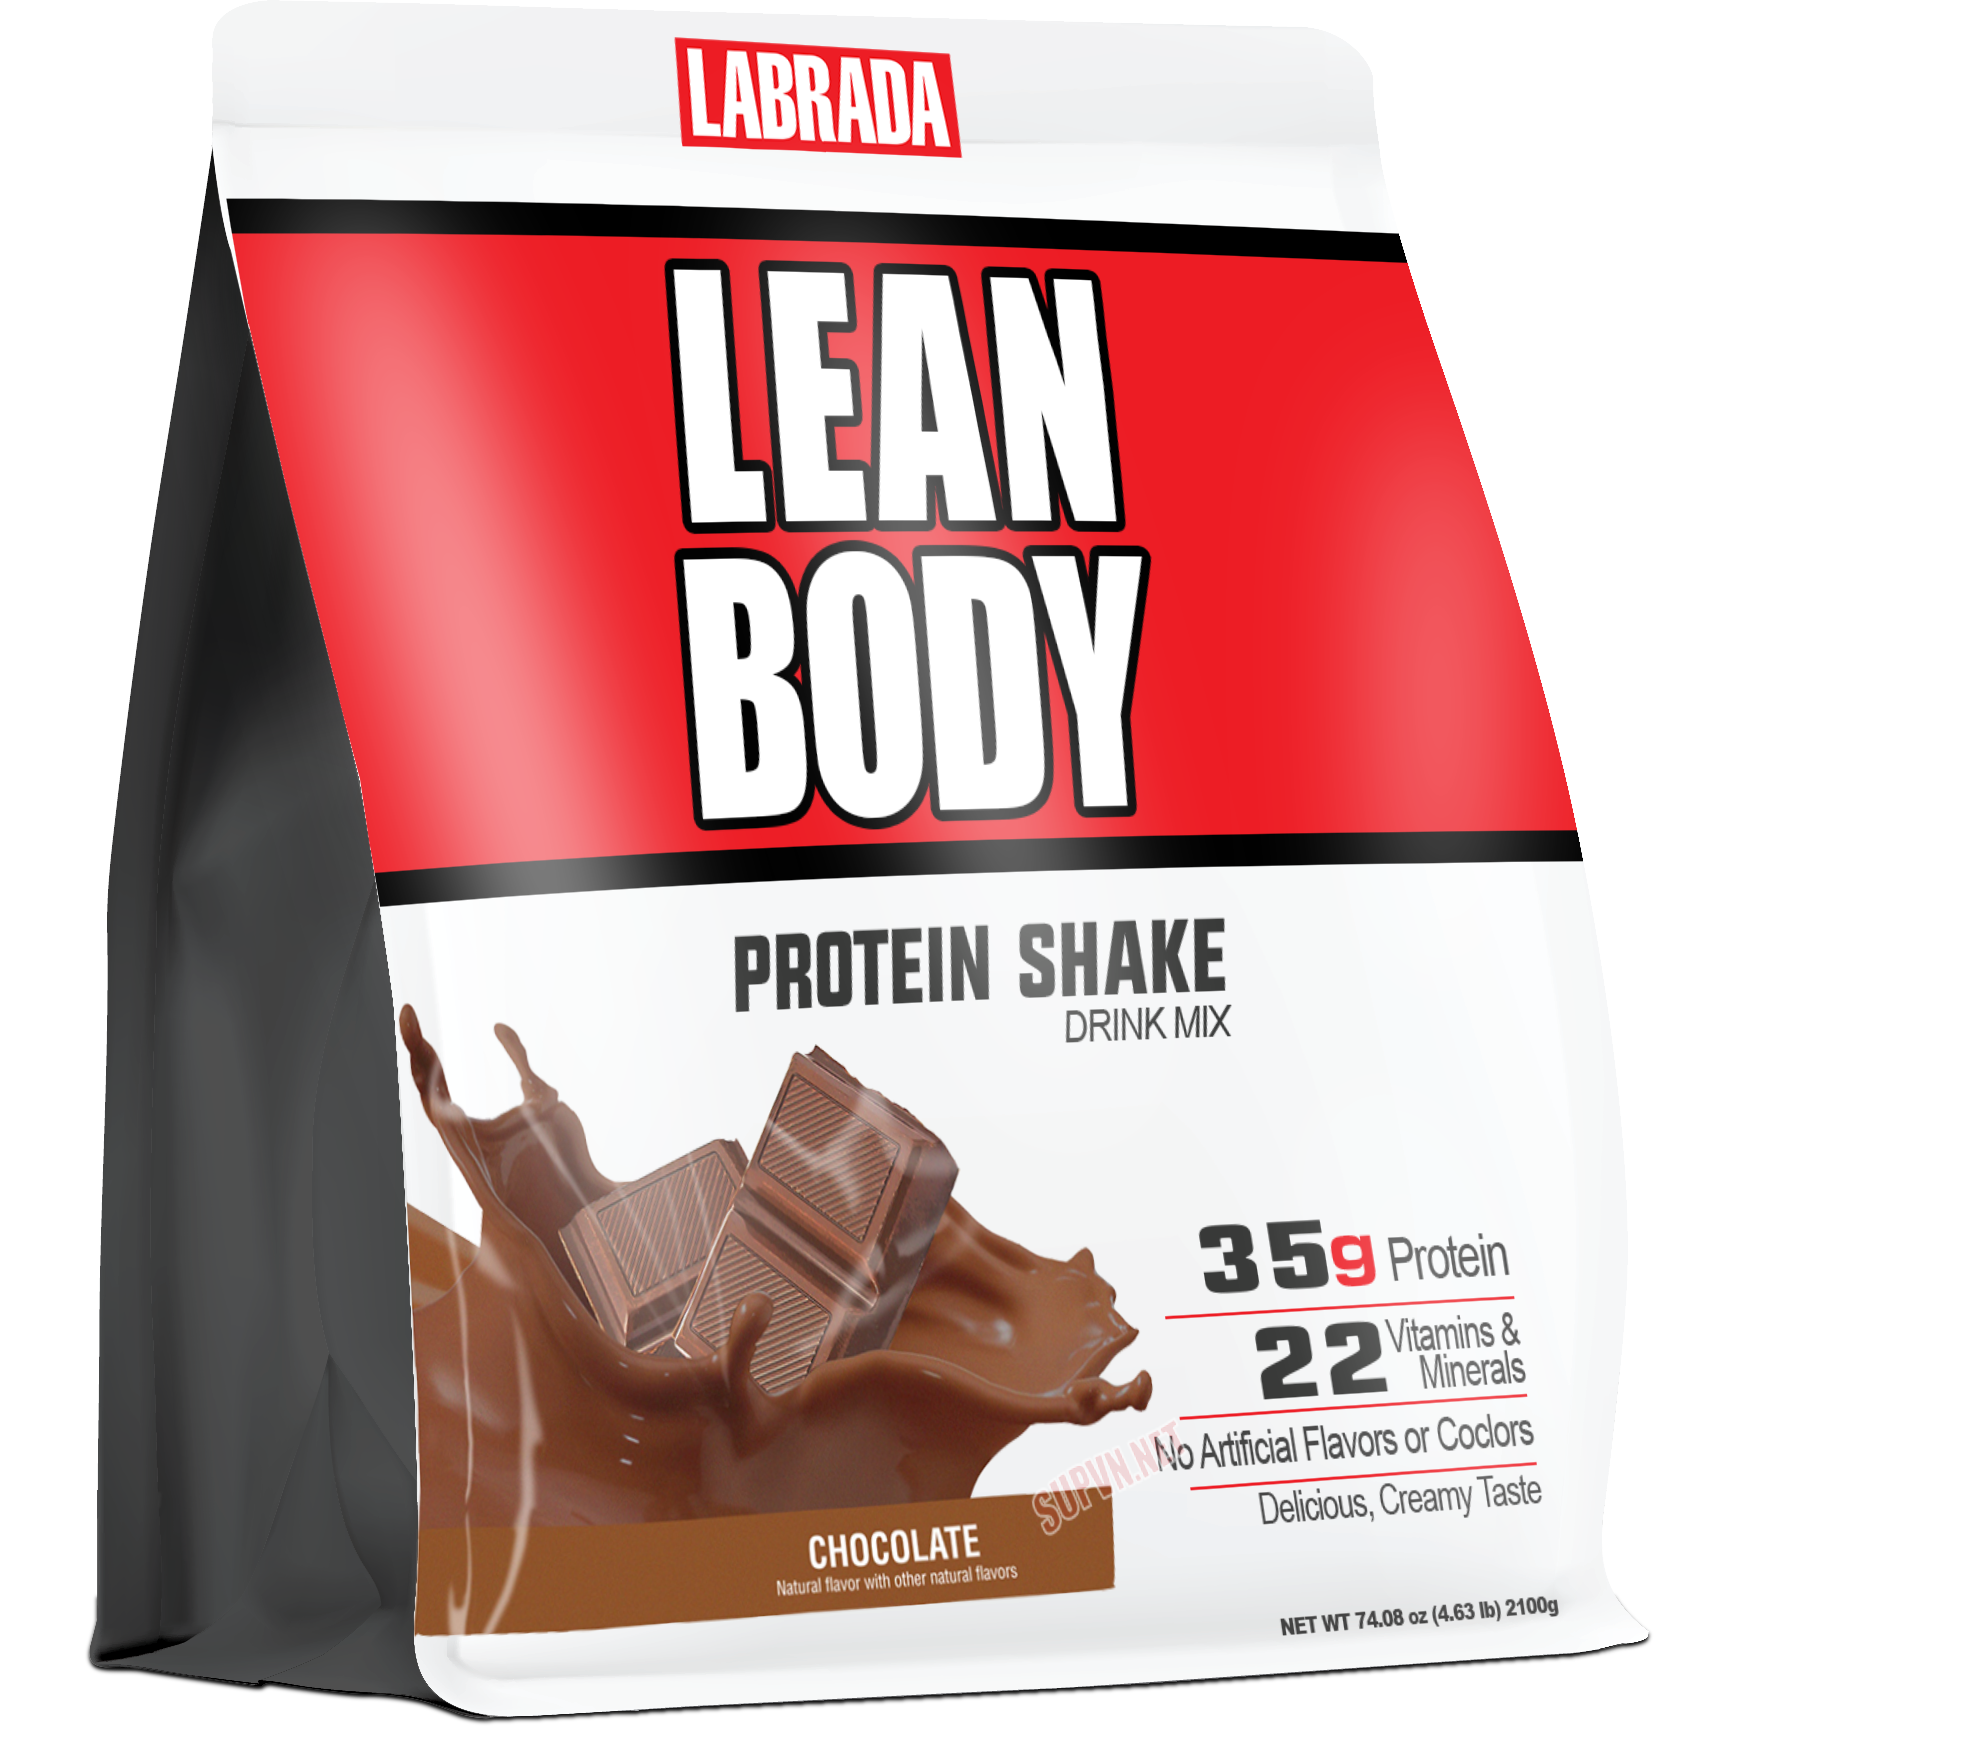 Lean Body Labrada 4.63lbs - Sữa dinh dưỡng hỗ trợ tăng cơ giảm mỡ thay thế bữa ăn tiện lợi Healthy Cung Cấp 35 Protein và Các Vitamin Năng Lượng Đảm Bảo Dinh Dưỡng Hoàn Chỉnh Bữa Ăn Lean Body Meal Replacement